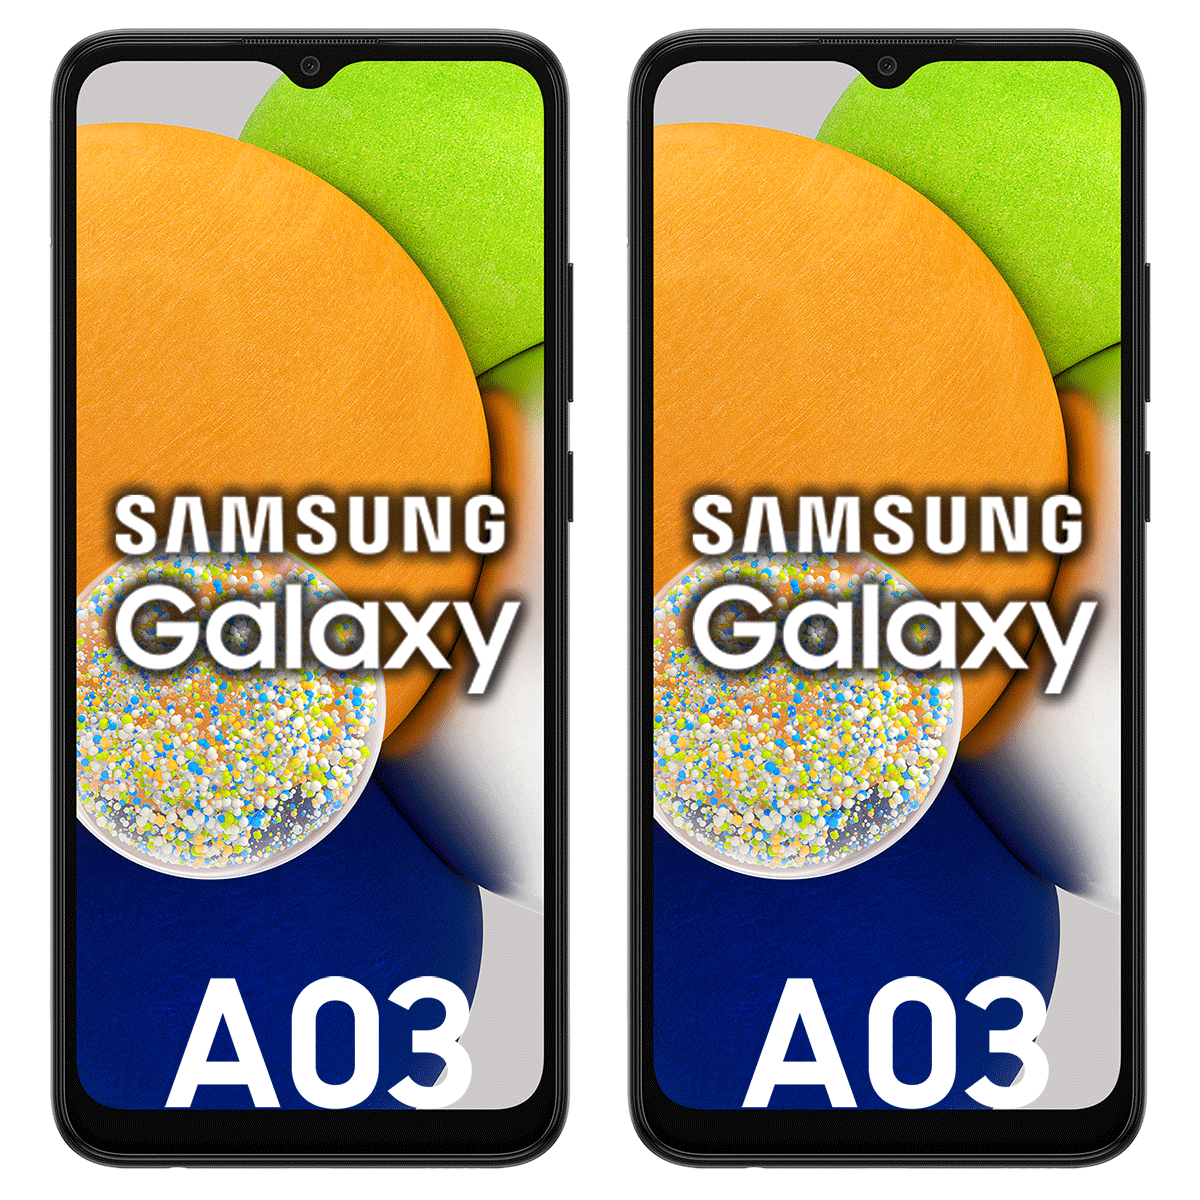 Samsung_Galaxy_A03_2x